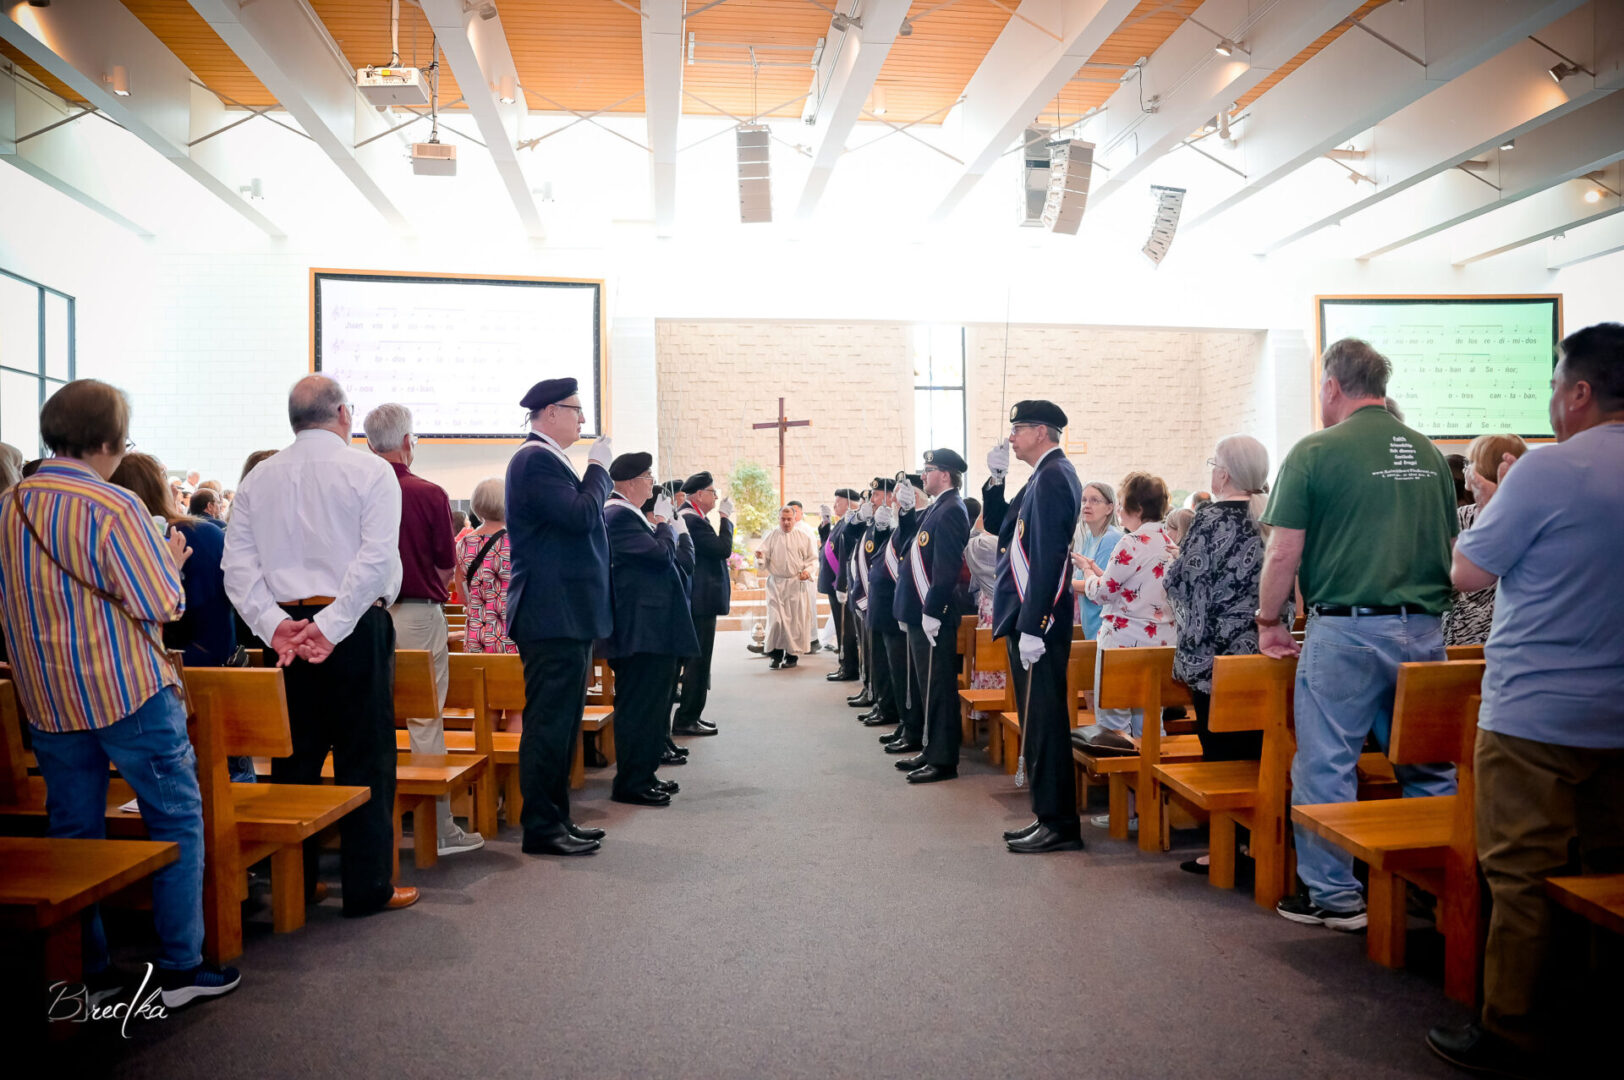 Men in uniform stand in church pews.